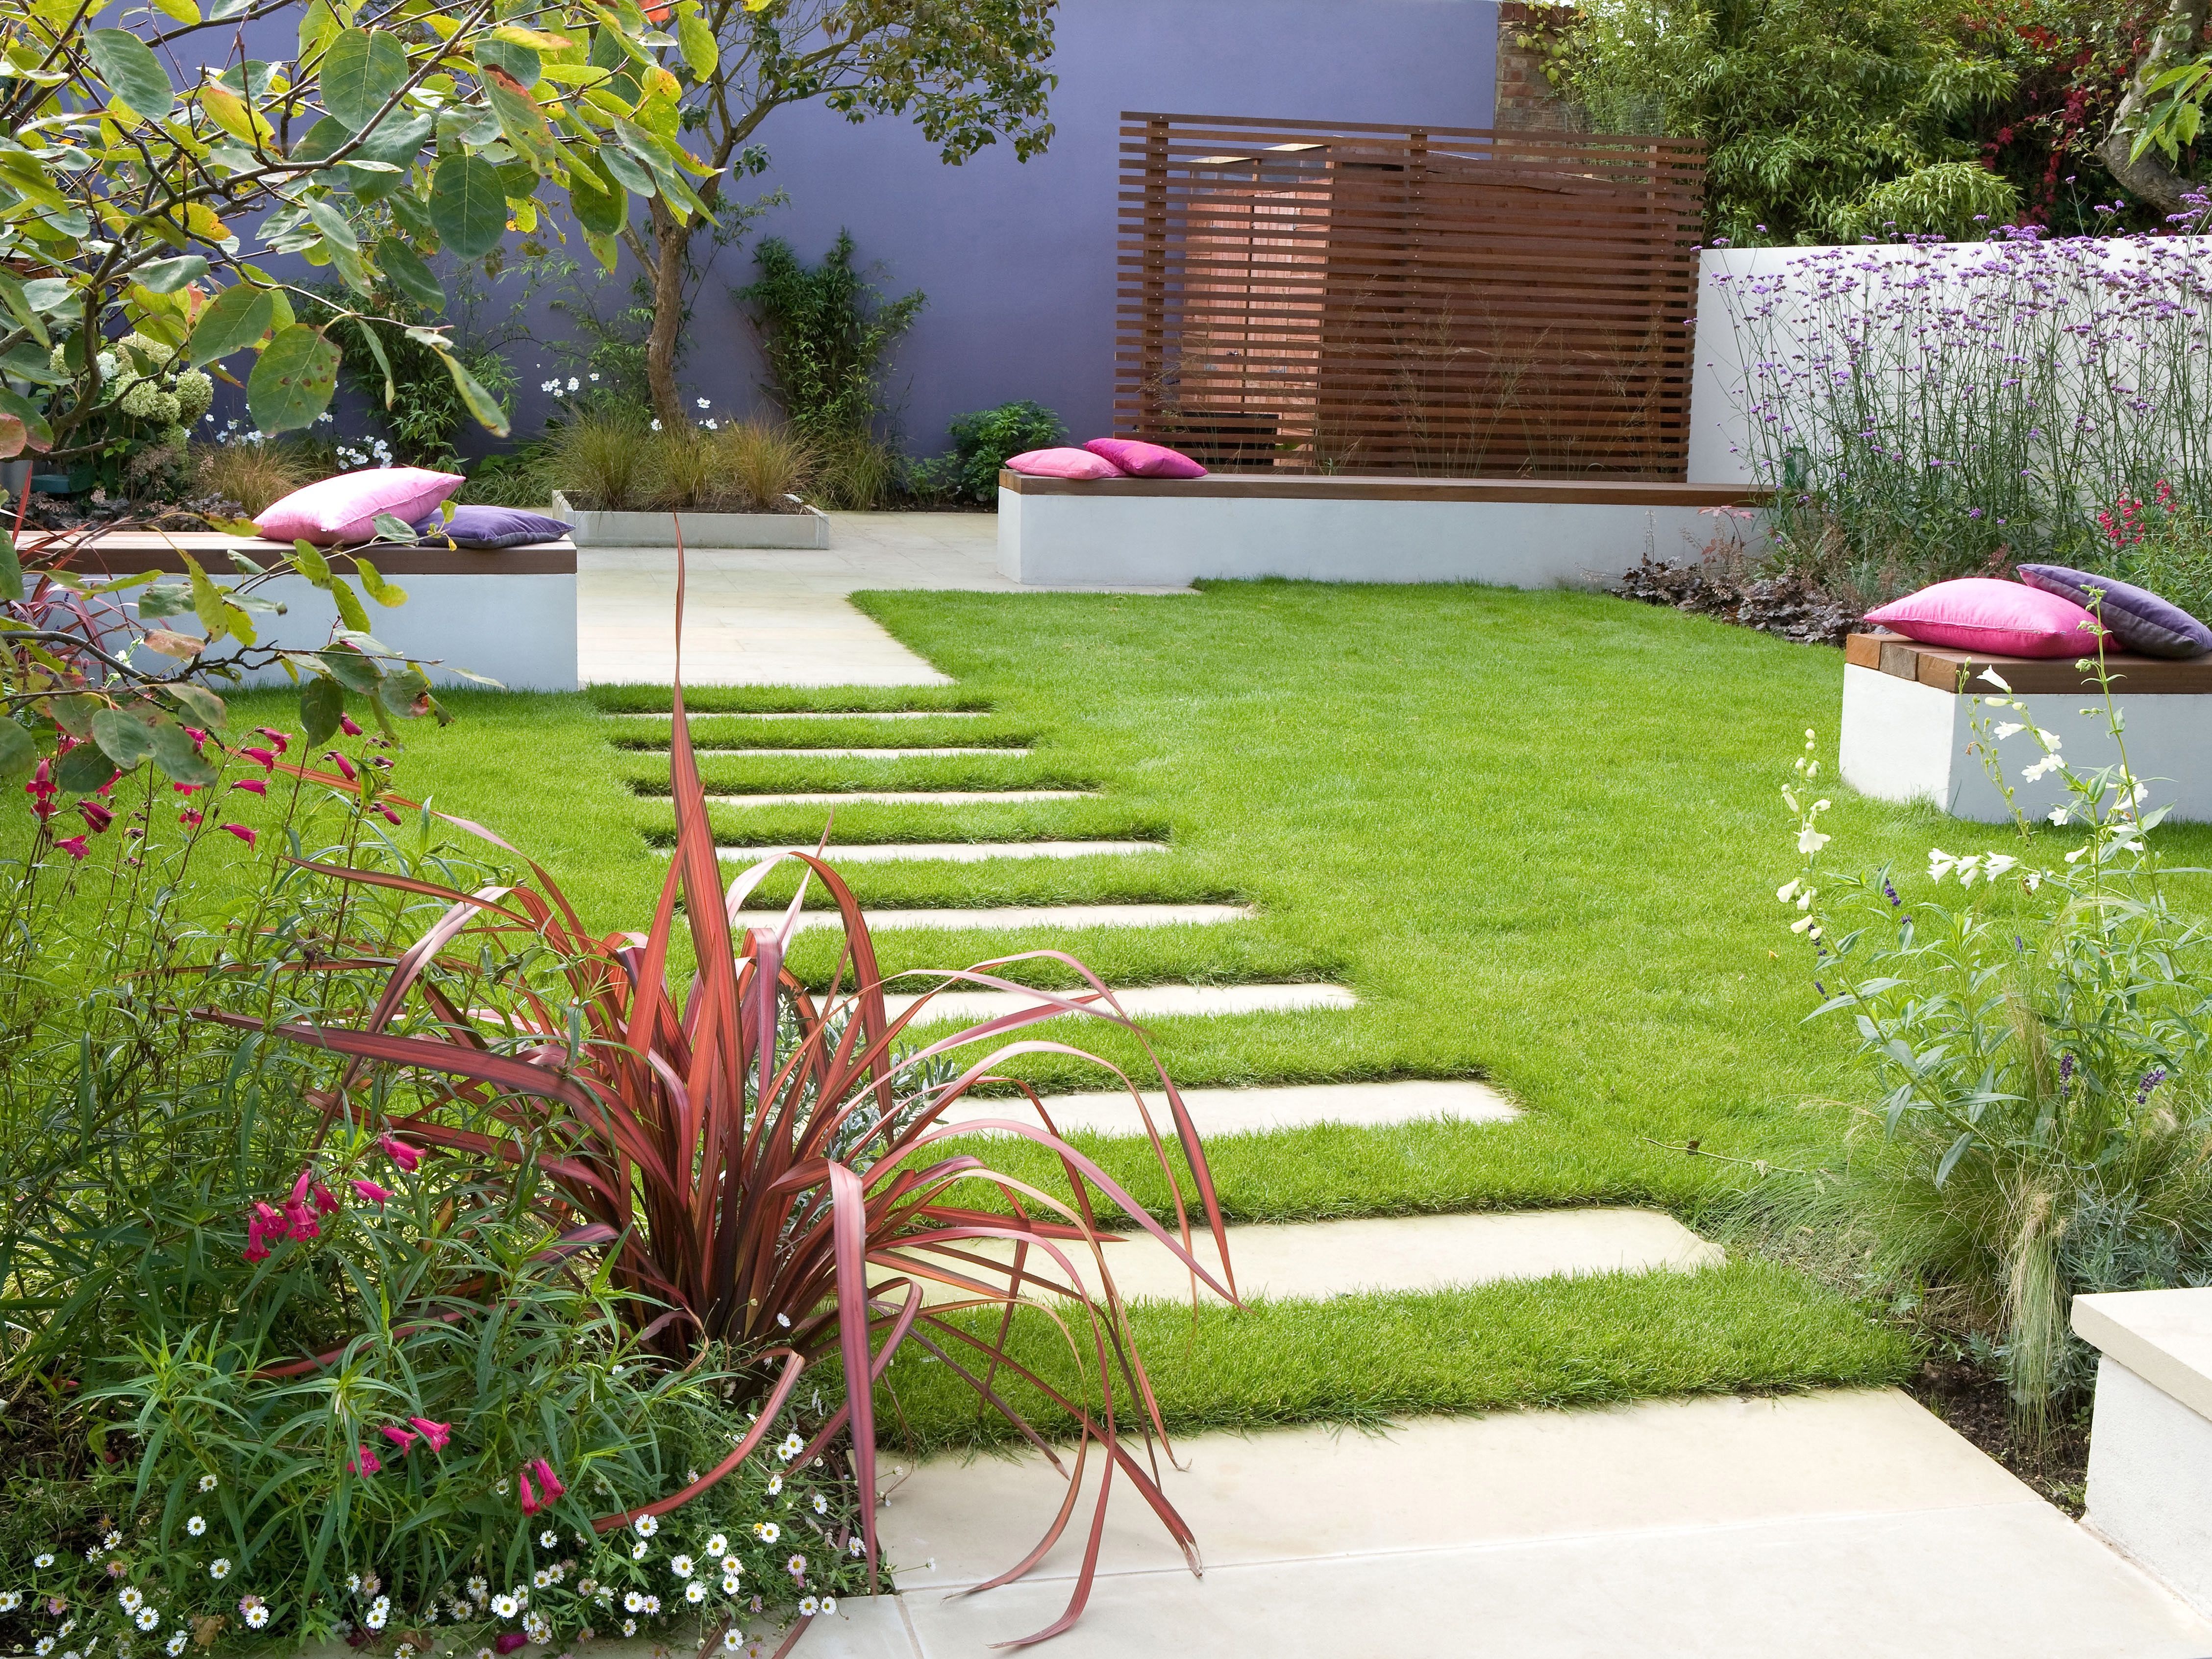 Contemporary Garden Design With Elegant Look #16274 | Garden Ideas